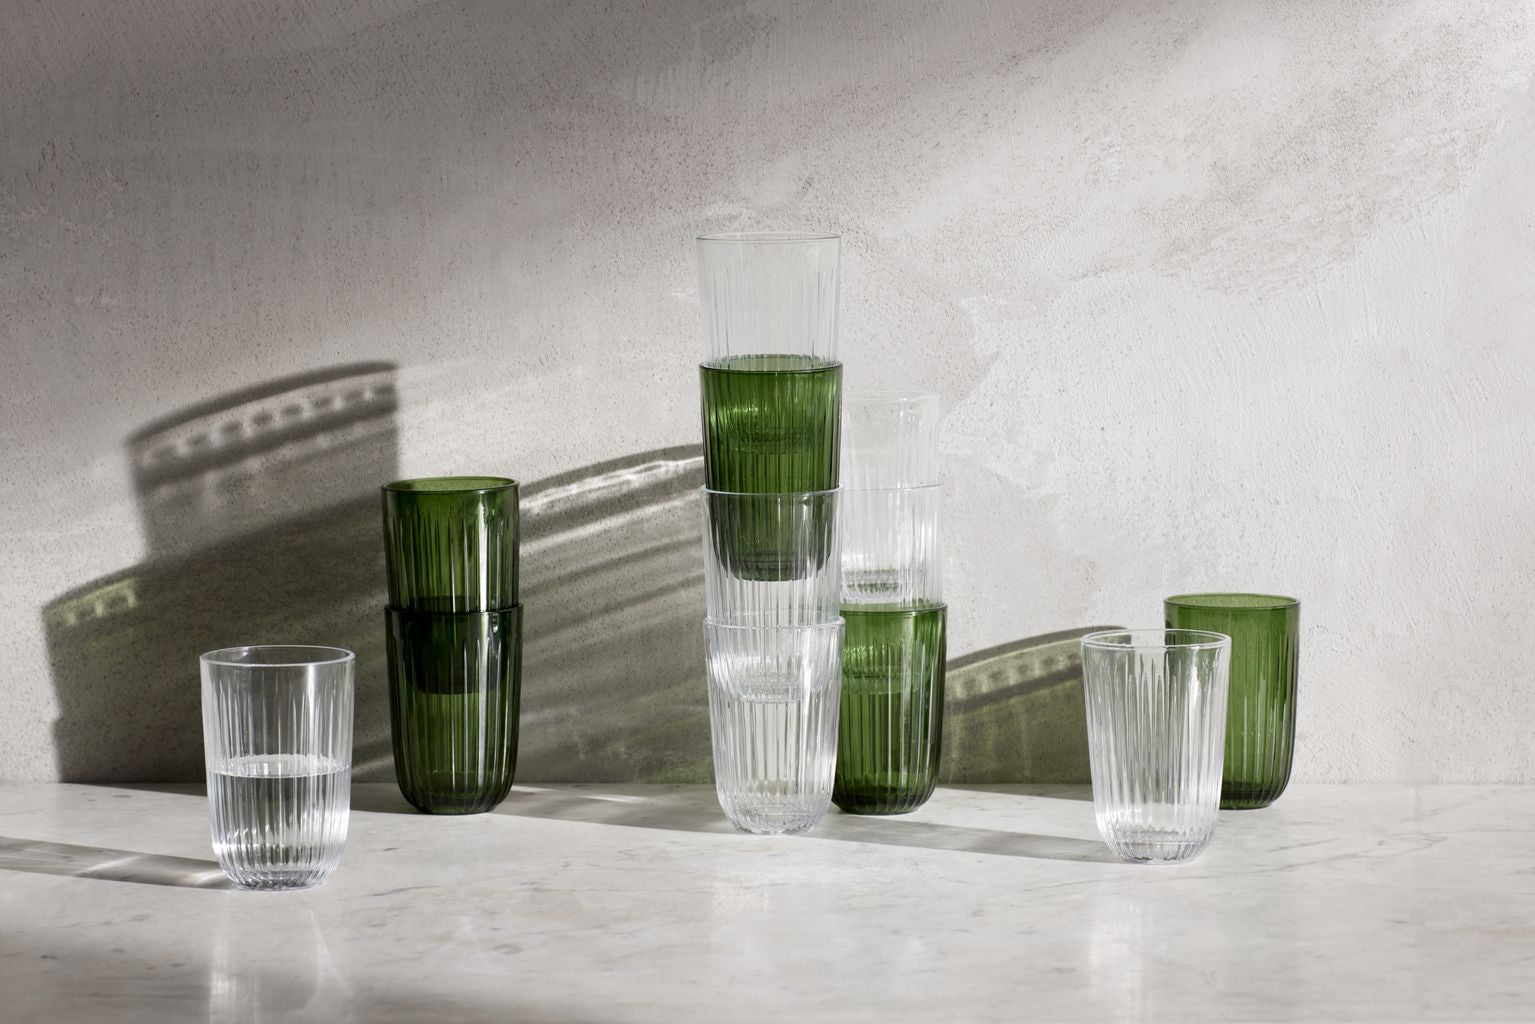 Kähler Hammershøi Glass de agua 37 Cl, verde 4 P Cs.